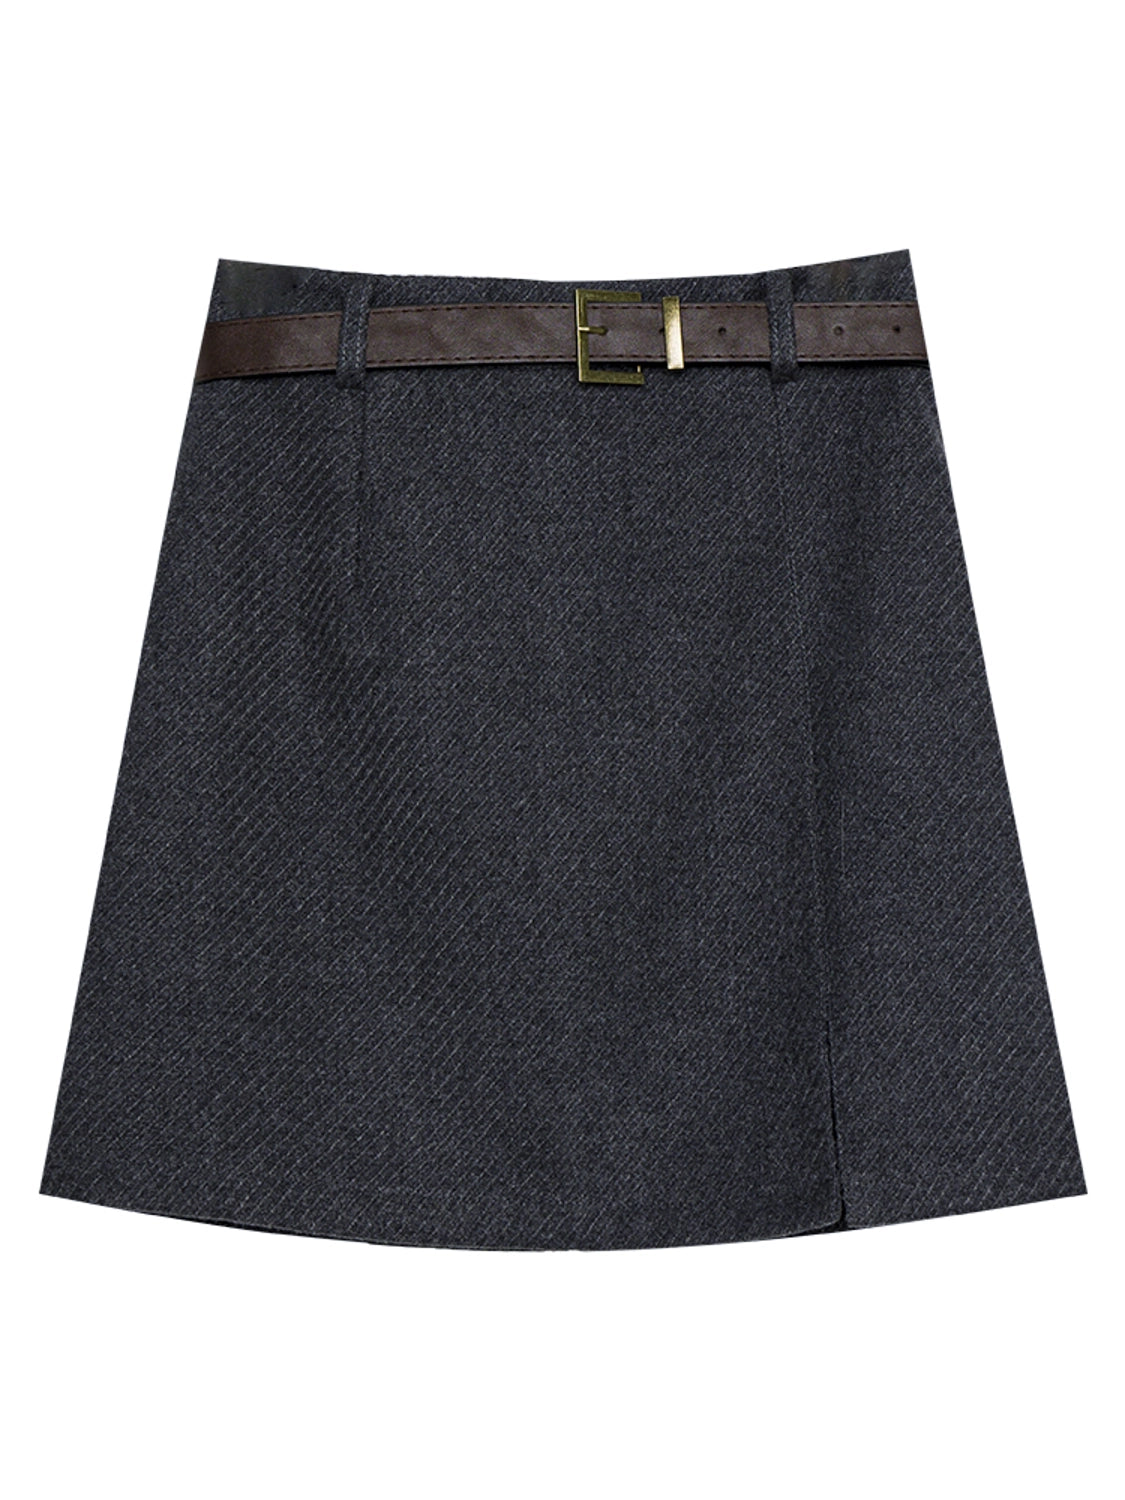 Skirt Mini A-Line Moden dengan Pinggang Berikat untuk Pakaian Wanita Trend